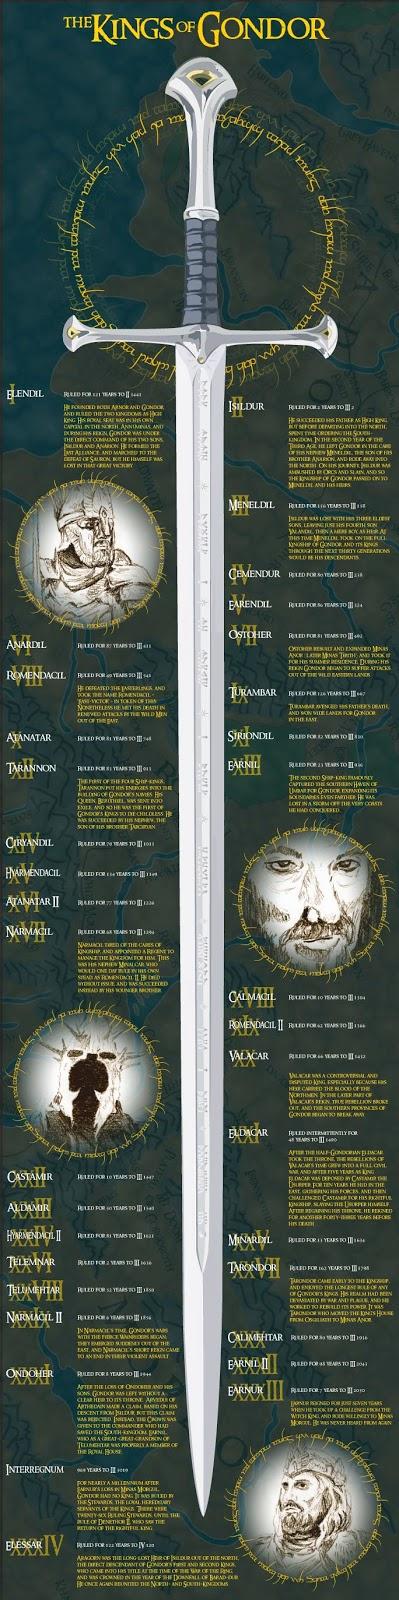 Los Reyes de Gondor en una infografia